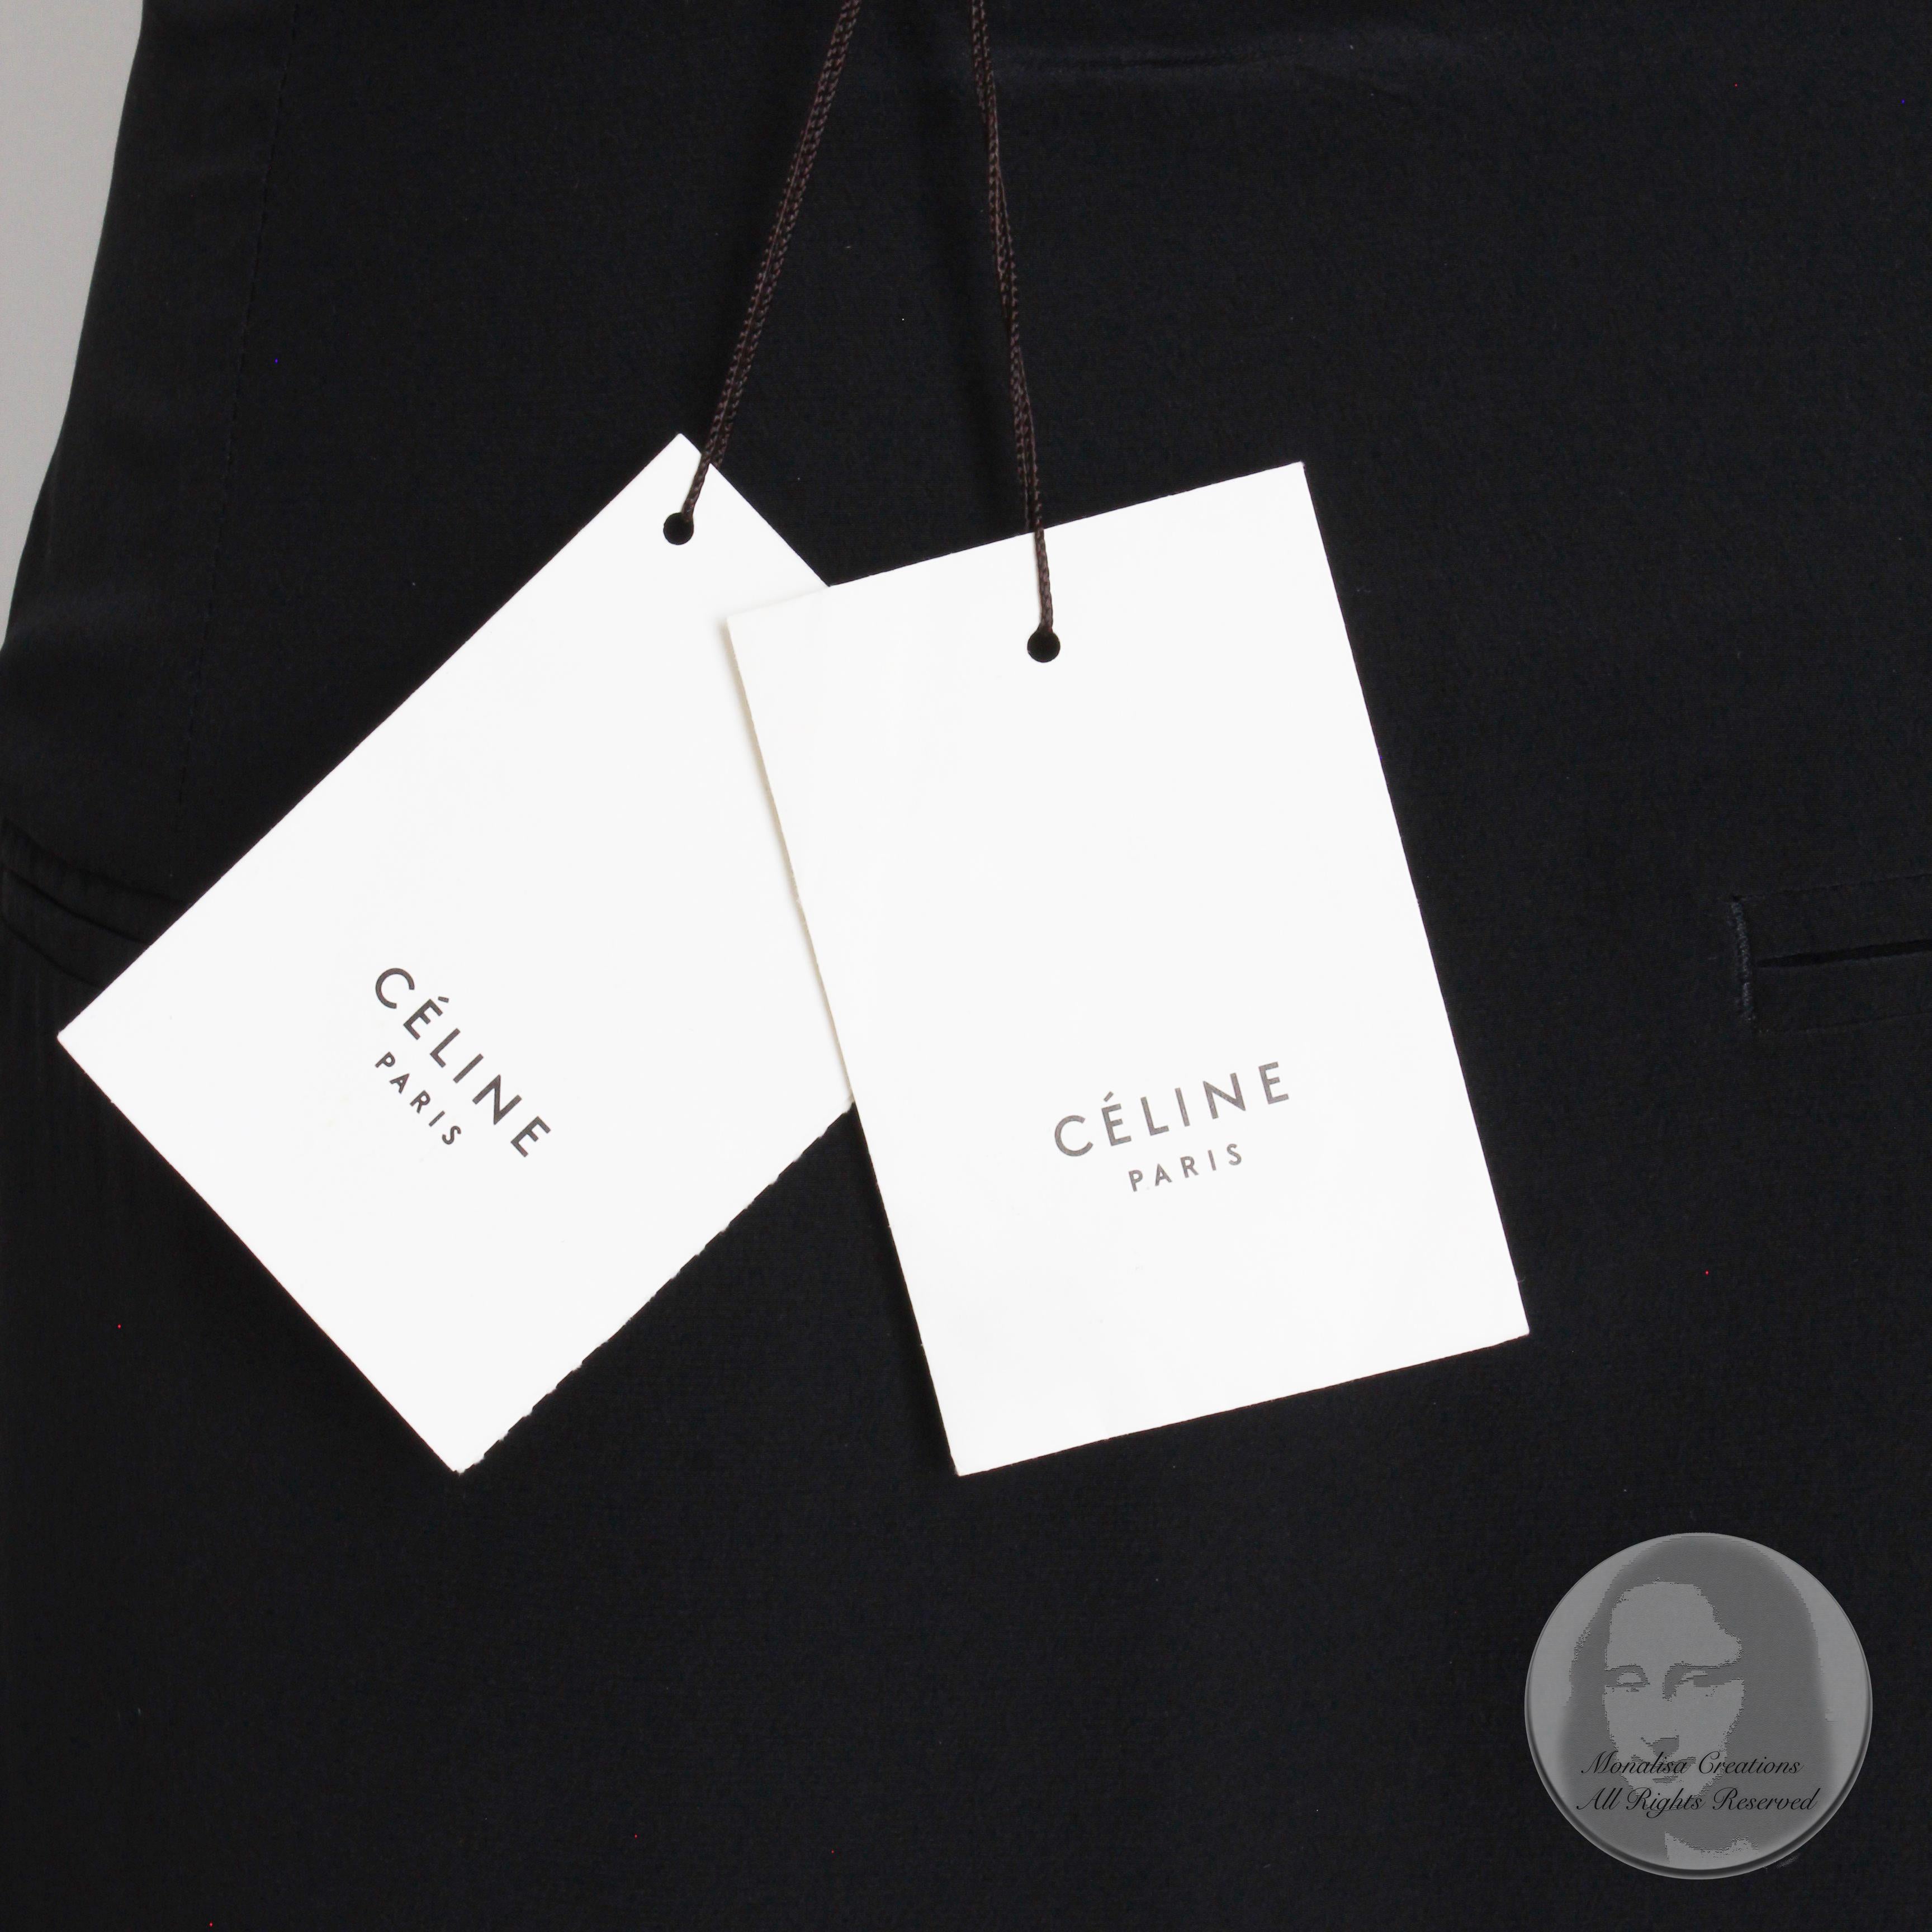 Celine Paris Silk Skirt Button Front Patch Pocket Phoebe Philo Black NWT Size 38 3